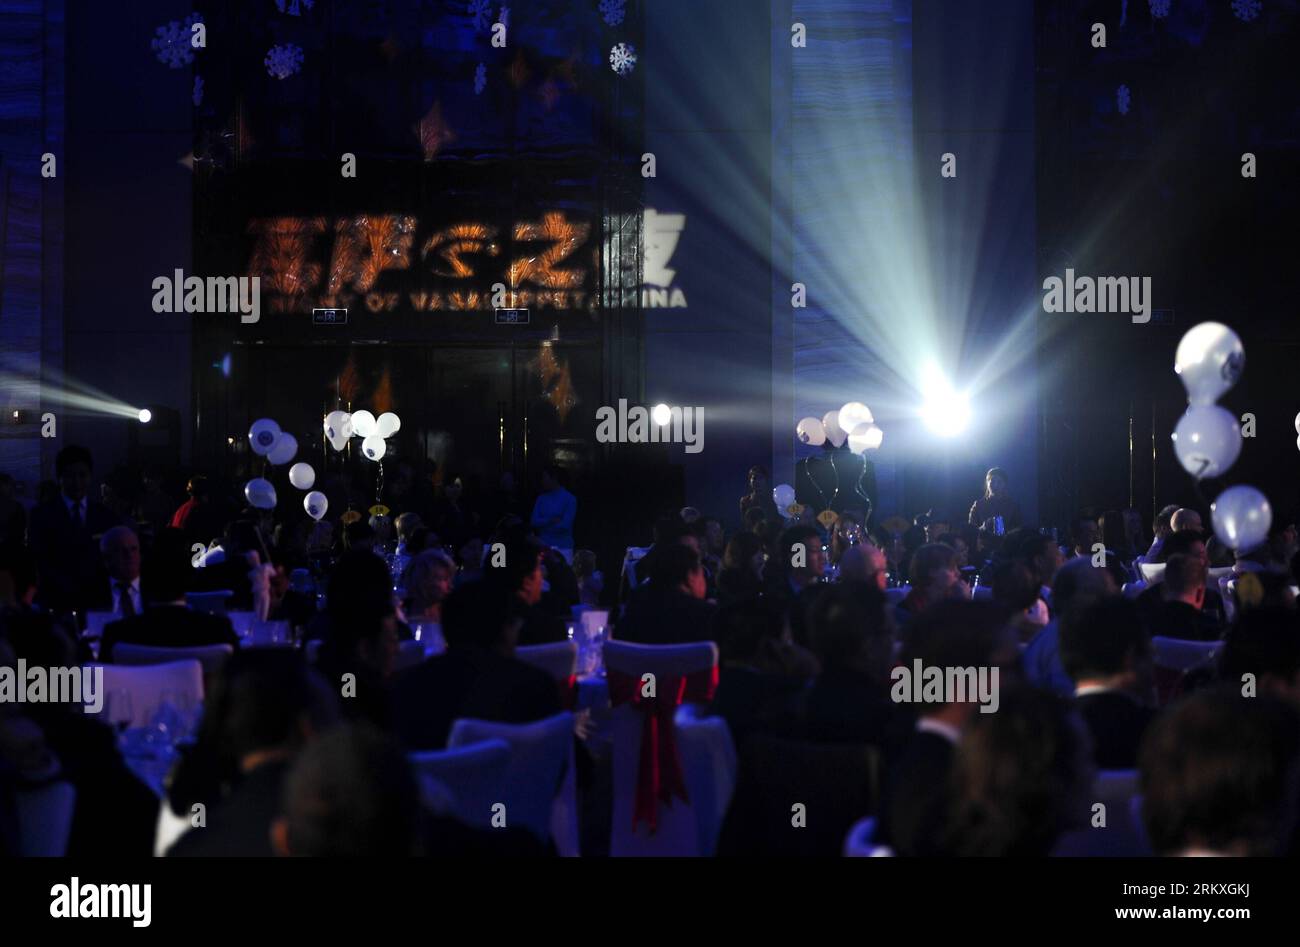 Bildnummer: 58958701 Datum: 31.12.2012 Copyright: imago/Xinhua (121231) -- CHANGCHUN, 31 dicembre 2012 (Xinhua) -- gli ospiti guardano lo spettacolo alla notte di Vasaloppet in Cina a Changchun, capitale della provincia di Jilin della Cina nord-orientale, 31 dicembre 2012. Nell'ambito del Vasaloppet China 2013 che dovrebbe iniziare il 2 gennaio, la festa di Capodanno si è tenuta lunedì sera a Changchun per accogliere il prossimo 2013. (Xinhua/Xu Chang) (mp) CINA-CHANGCHUN-NIGHT OF VASALOPPET (CN) PUBLICATIONxNOTxINxCHN Gesellschaft Silvester Neujahr 2012 2013 Jahreswechsel xdp x0x 2012 quer 58958701 Data 31 12 2012 Foto Stock